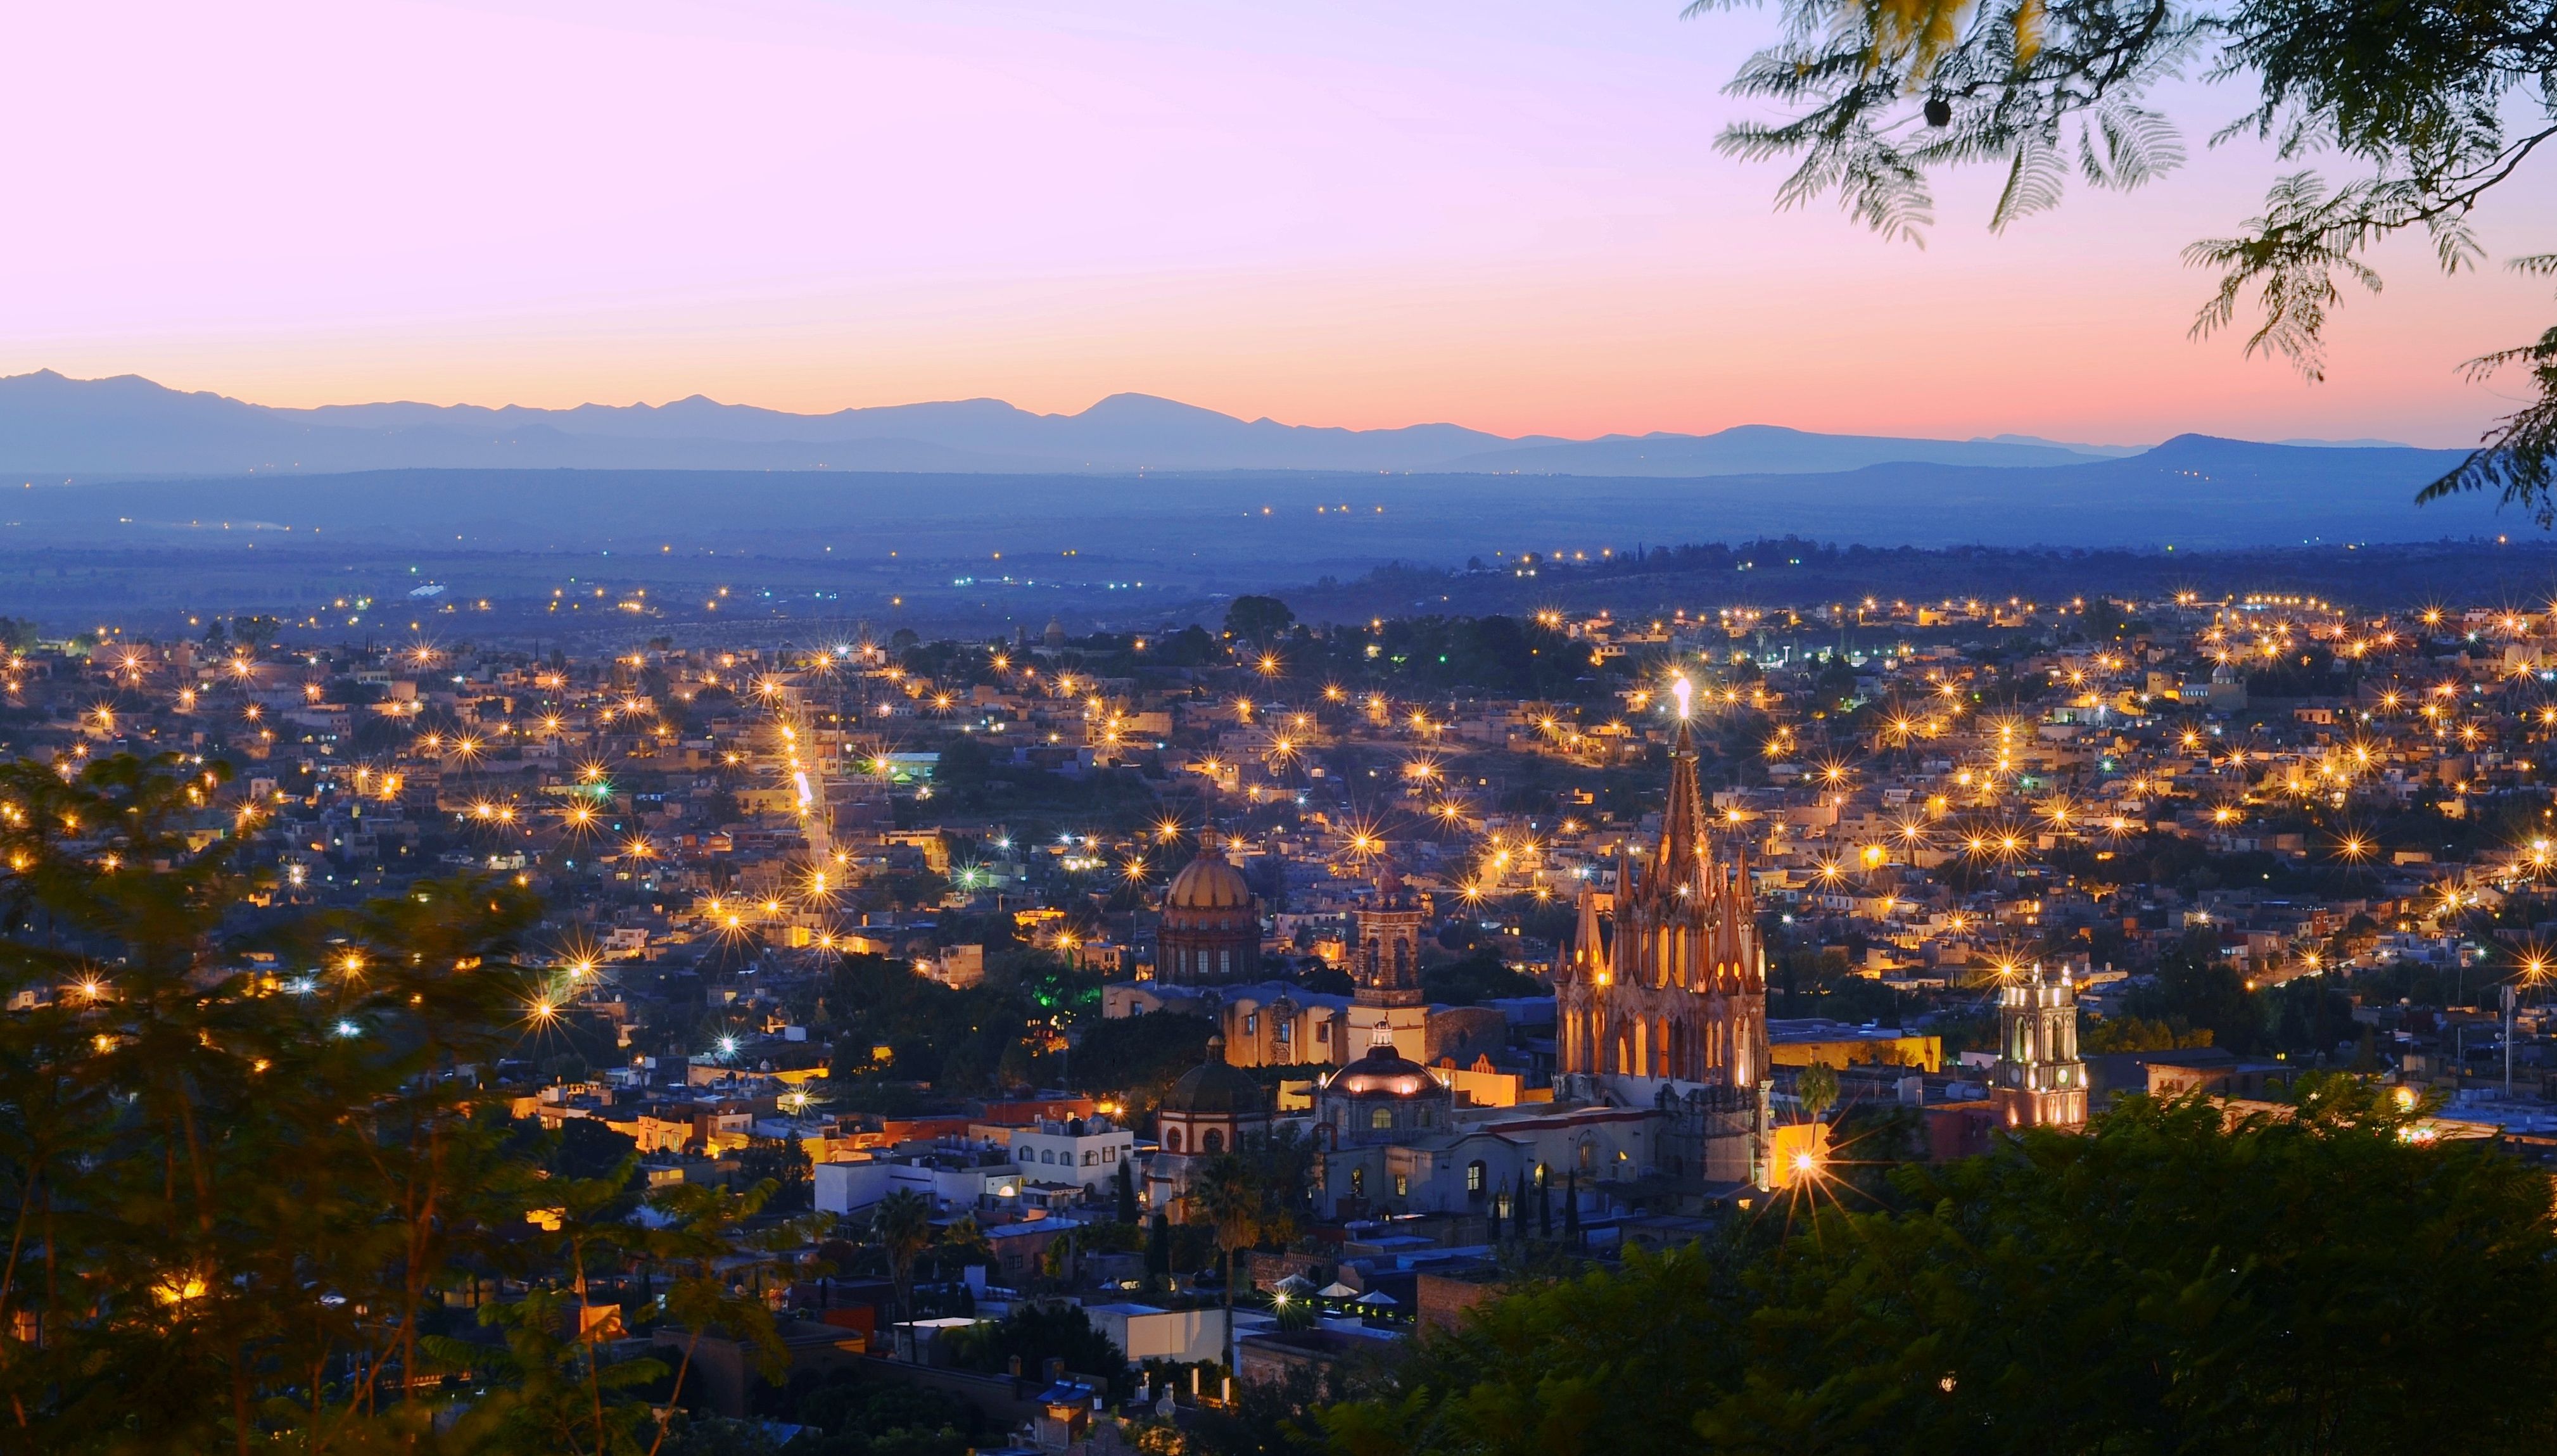 San_Miguel_de_Allende_at_Sunset.S3VvstNF.jpg